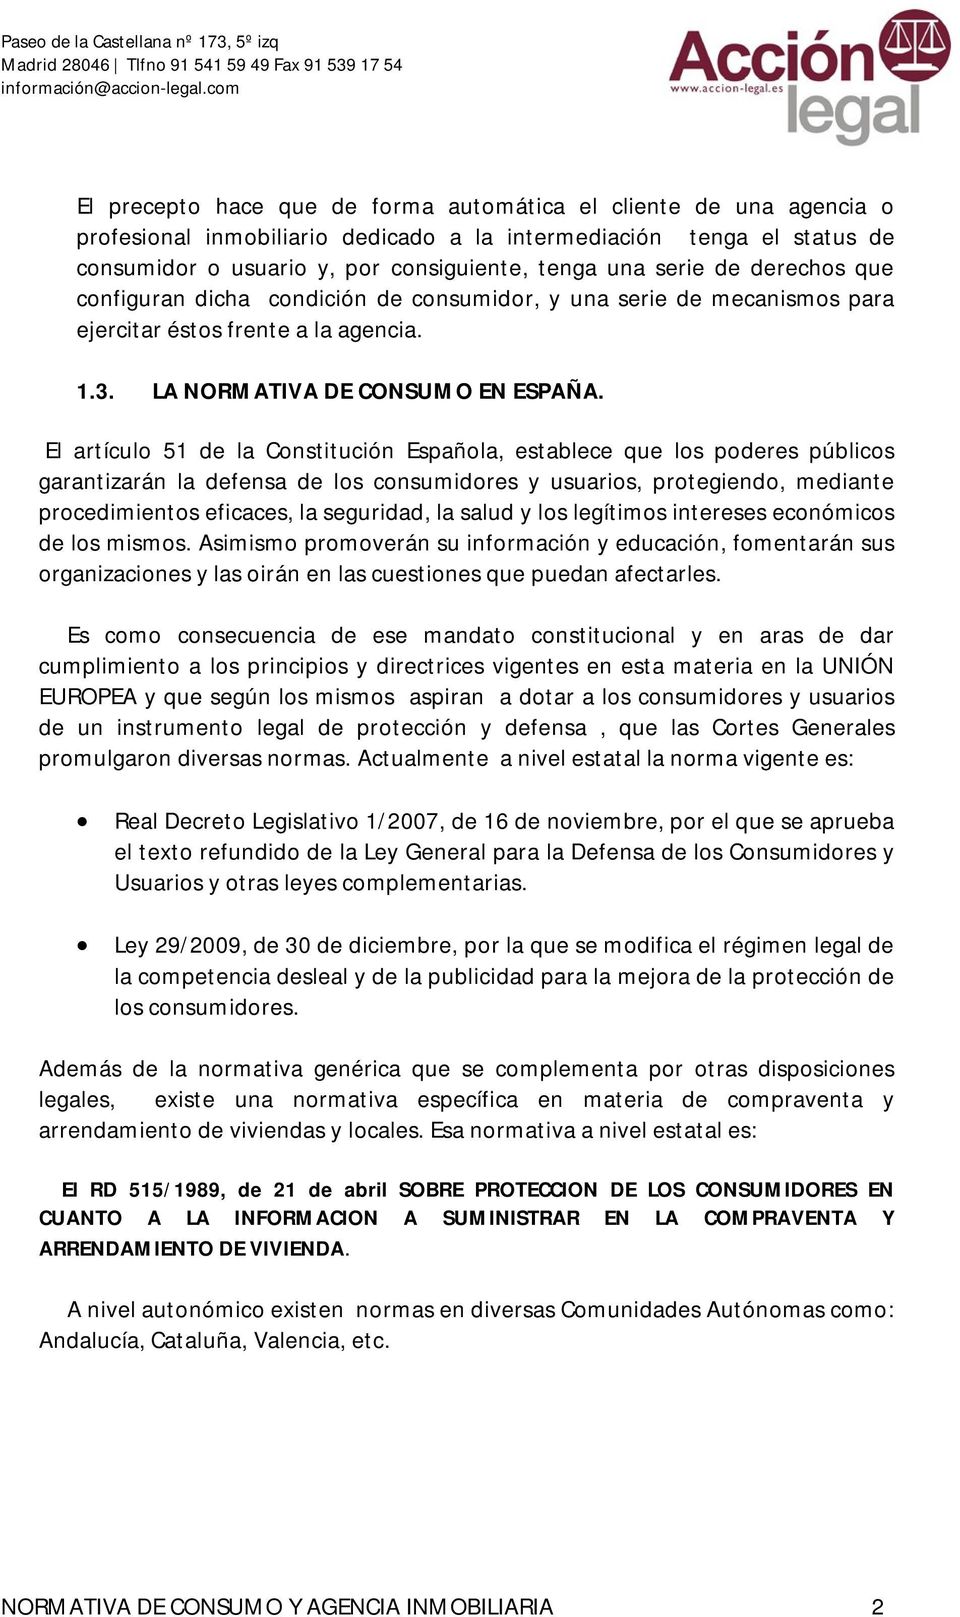 El artículo 51 de la Constitución Española, establece que los poderes públicos garantizarán la defensa de los consumidores y usuarios, protegiendo, mediante procedimientos eficaces, la seguridad, la